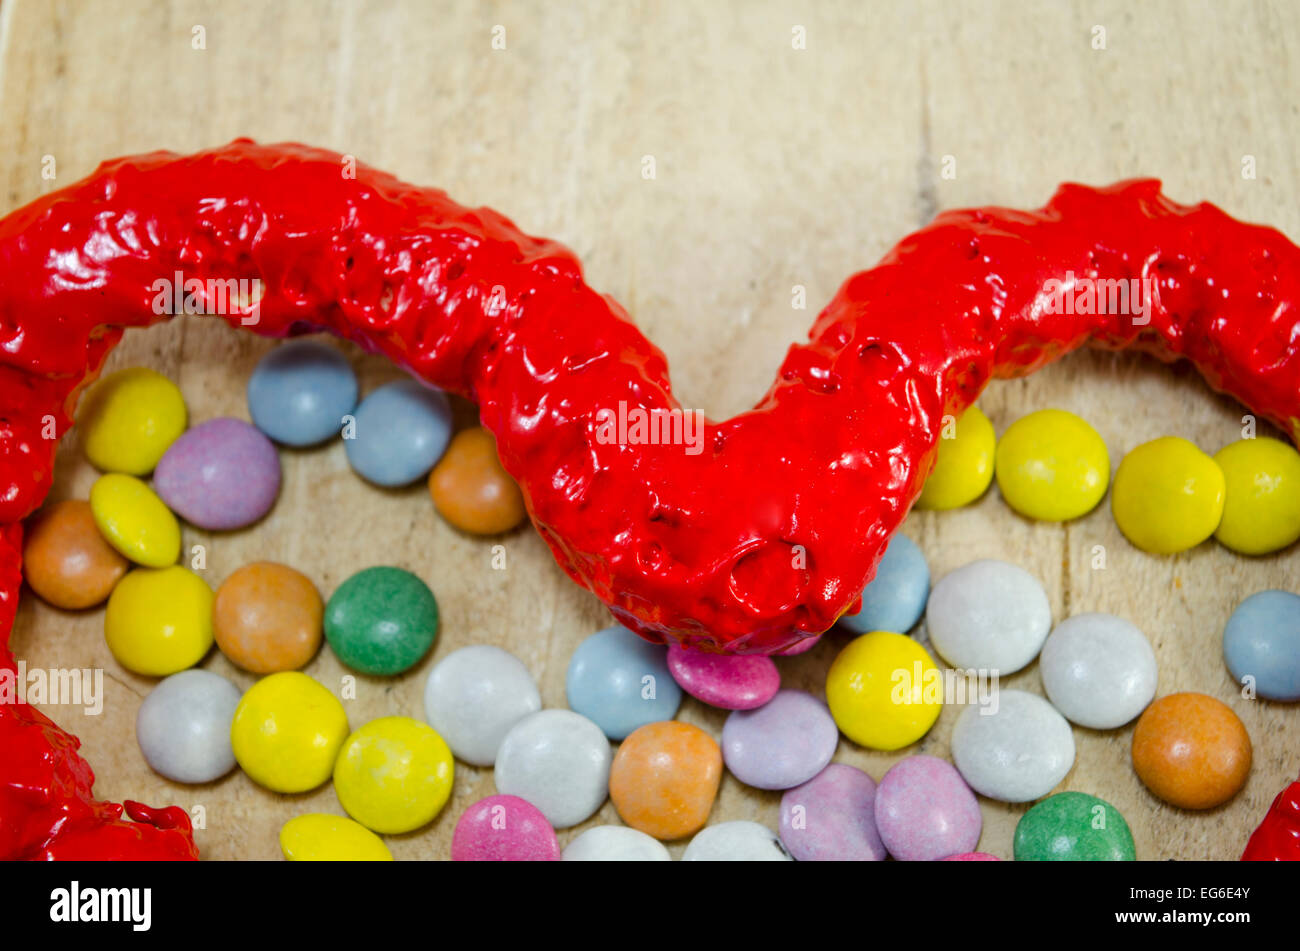 Bonbons coeur rouge et bonbons bonbons colorés sur une table en bois, gros plan Banque D'Images